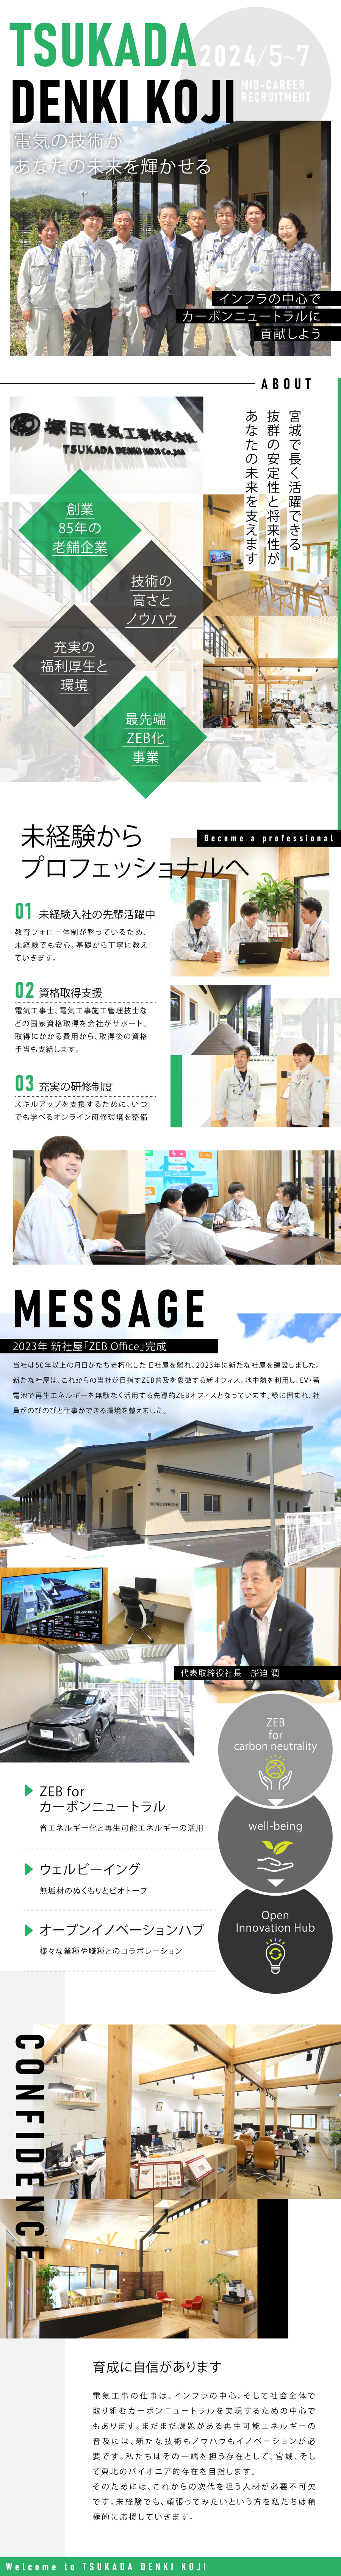 塚田電気工事株式会社からのメッセージ